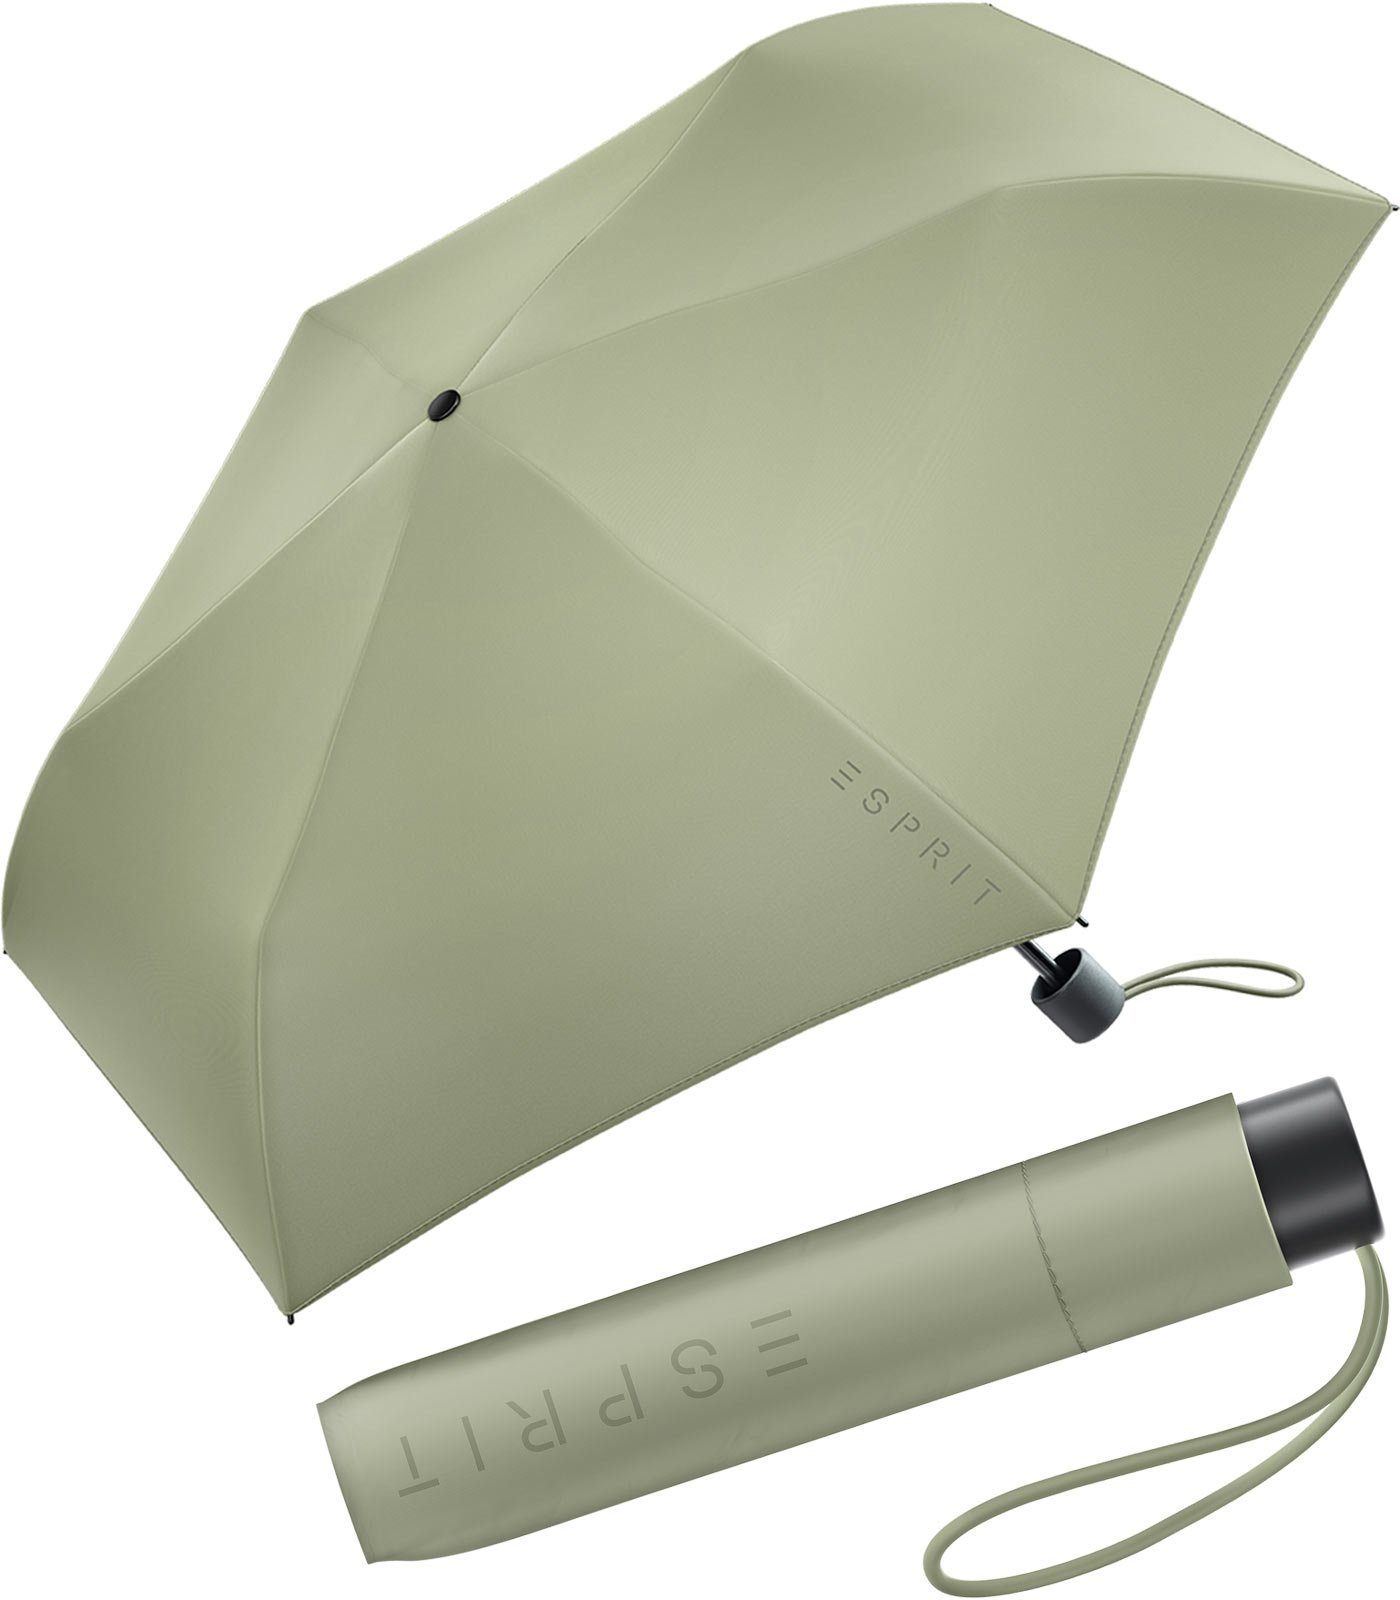 Esprit FJ in Damen Trendfarben sehr olive Taschenregenschirm Mini neuen Slimline leicht, den Regenschirm 2022,